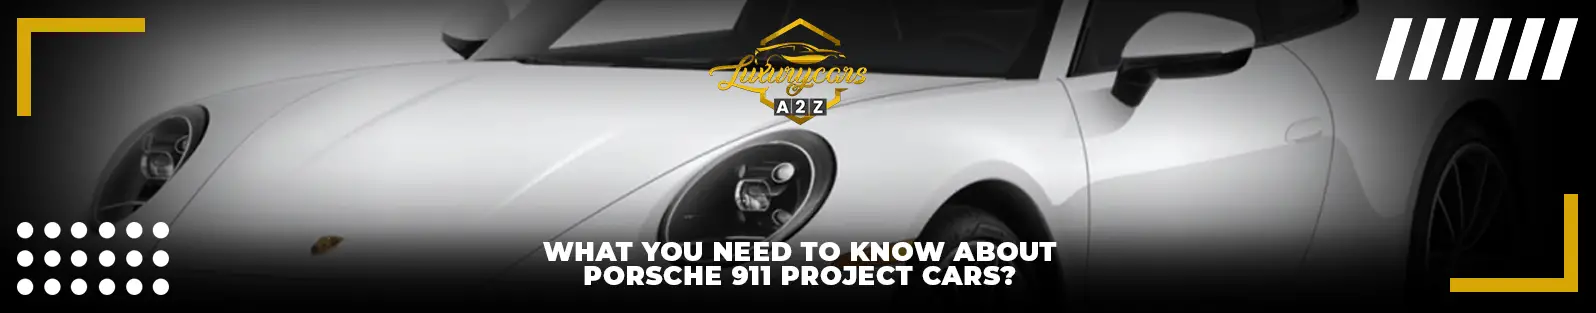 Ce que vous devez savoir sur les voitures de projet Porsche 911